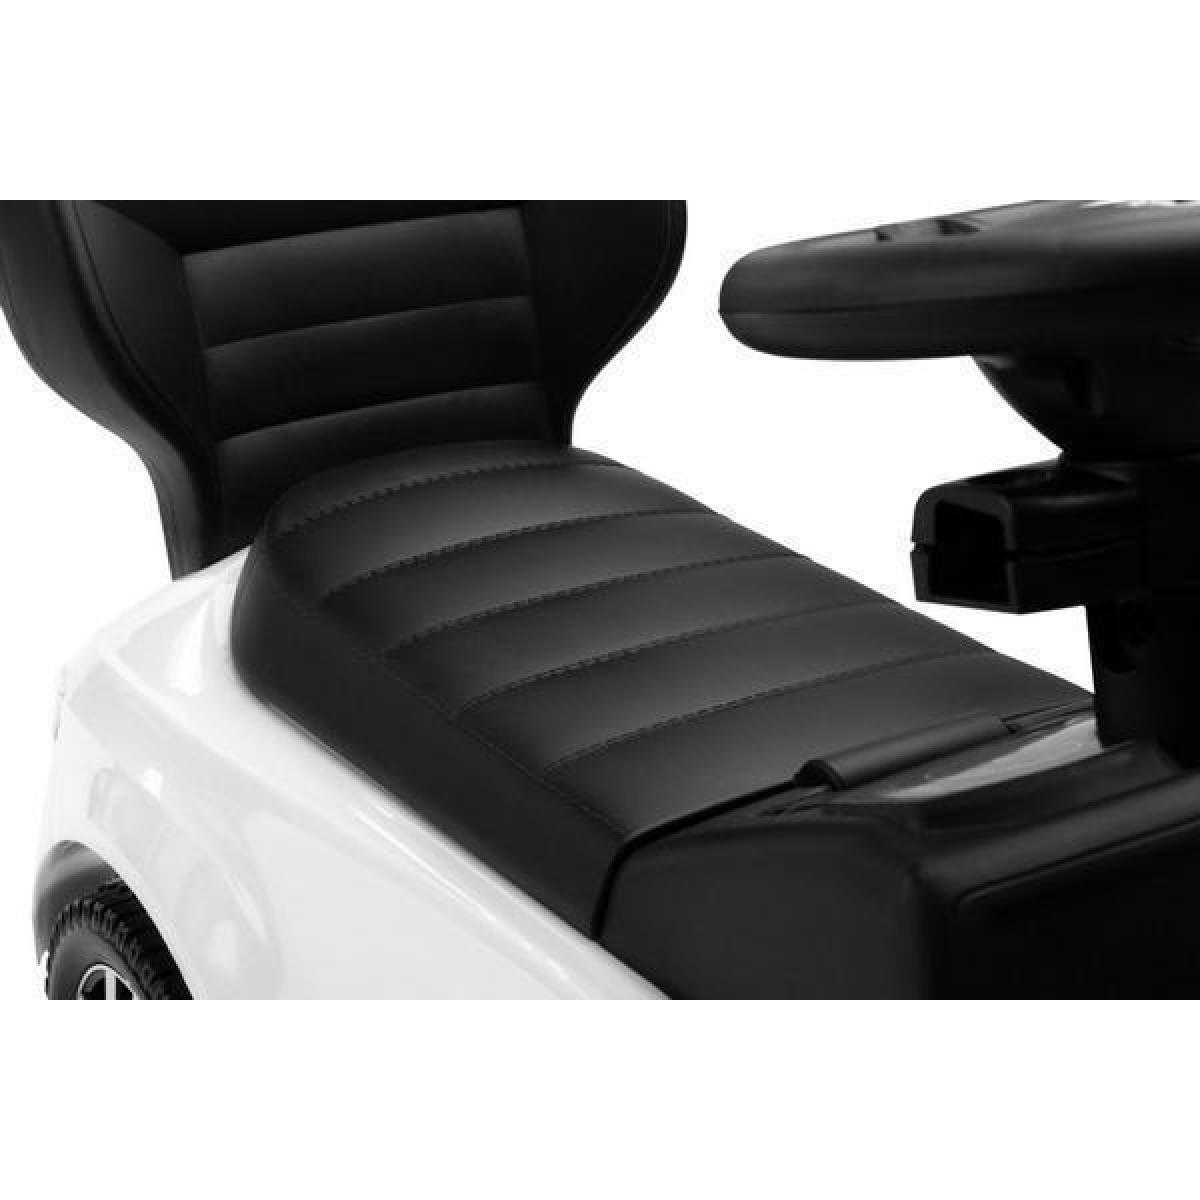 Παιδικό Αμαξάκι - Περπατούρα Ride on Car Με Λαβή VW T-Roc Licenced Product Toyz By Caretero Λευκό